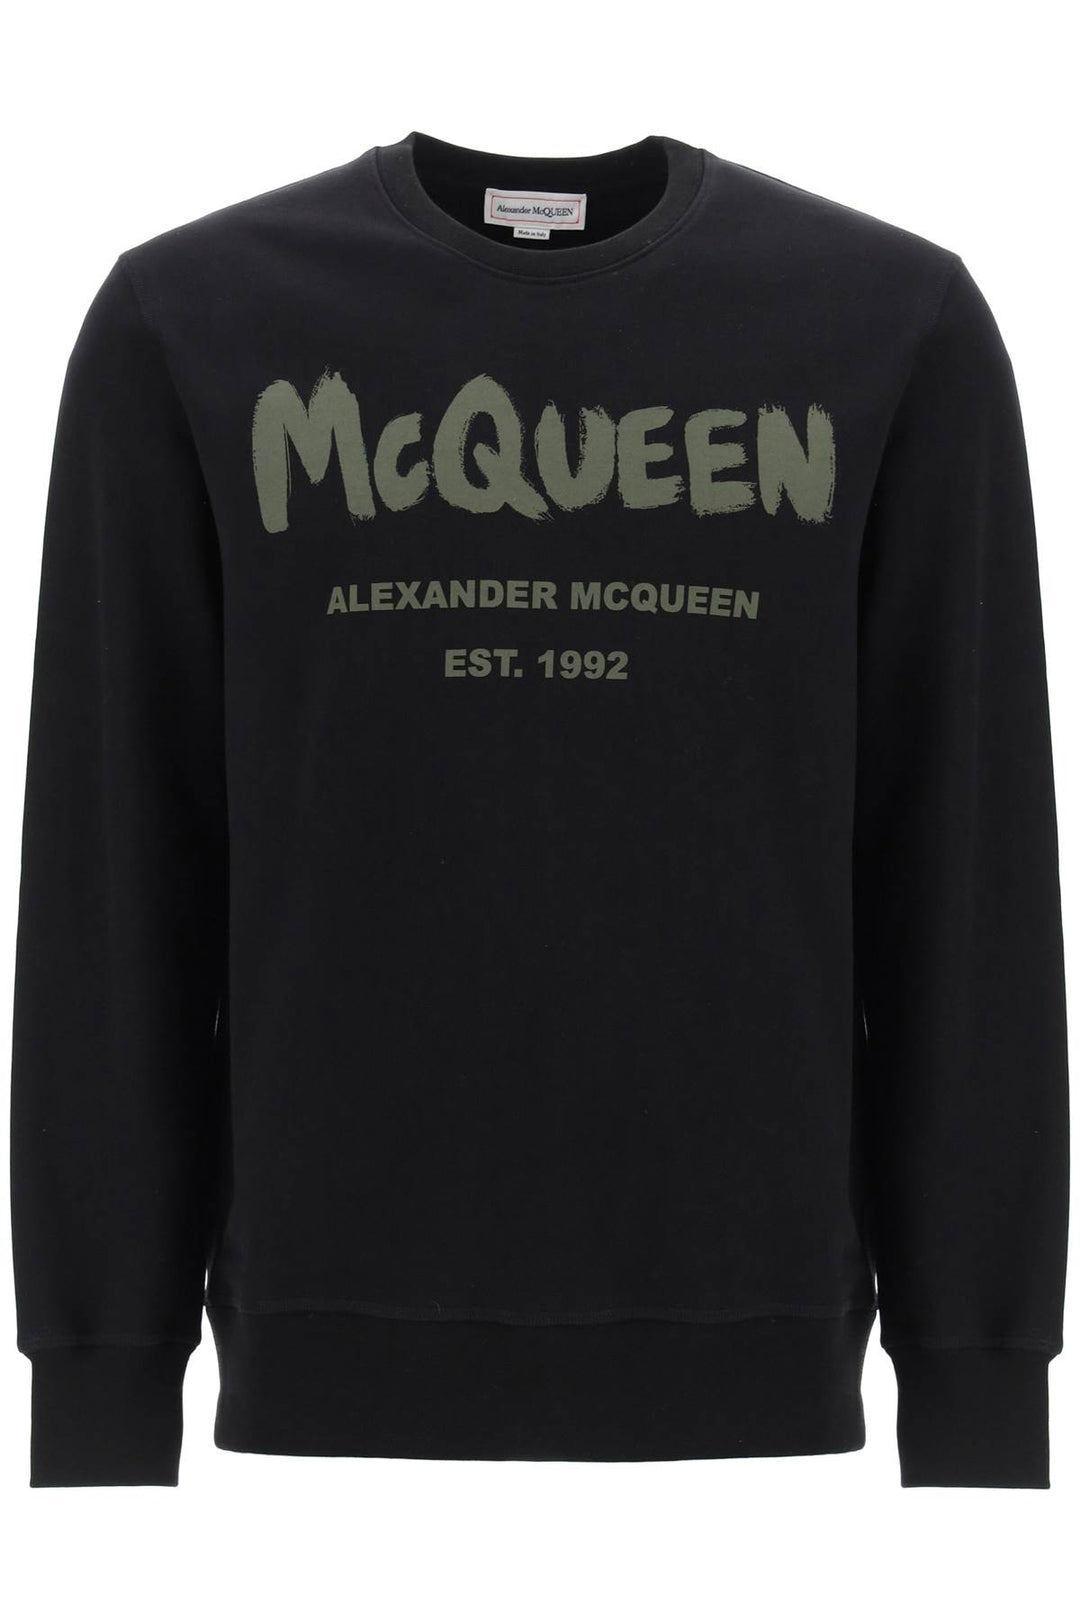 Alexander mcqueen mcqueen graffiti sweatshirt-0